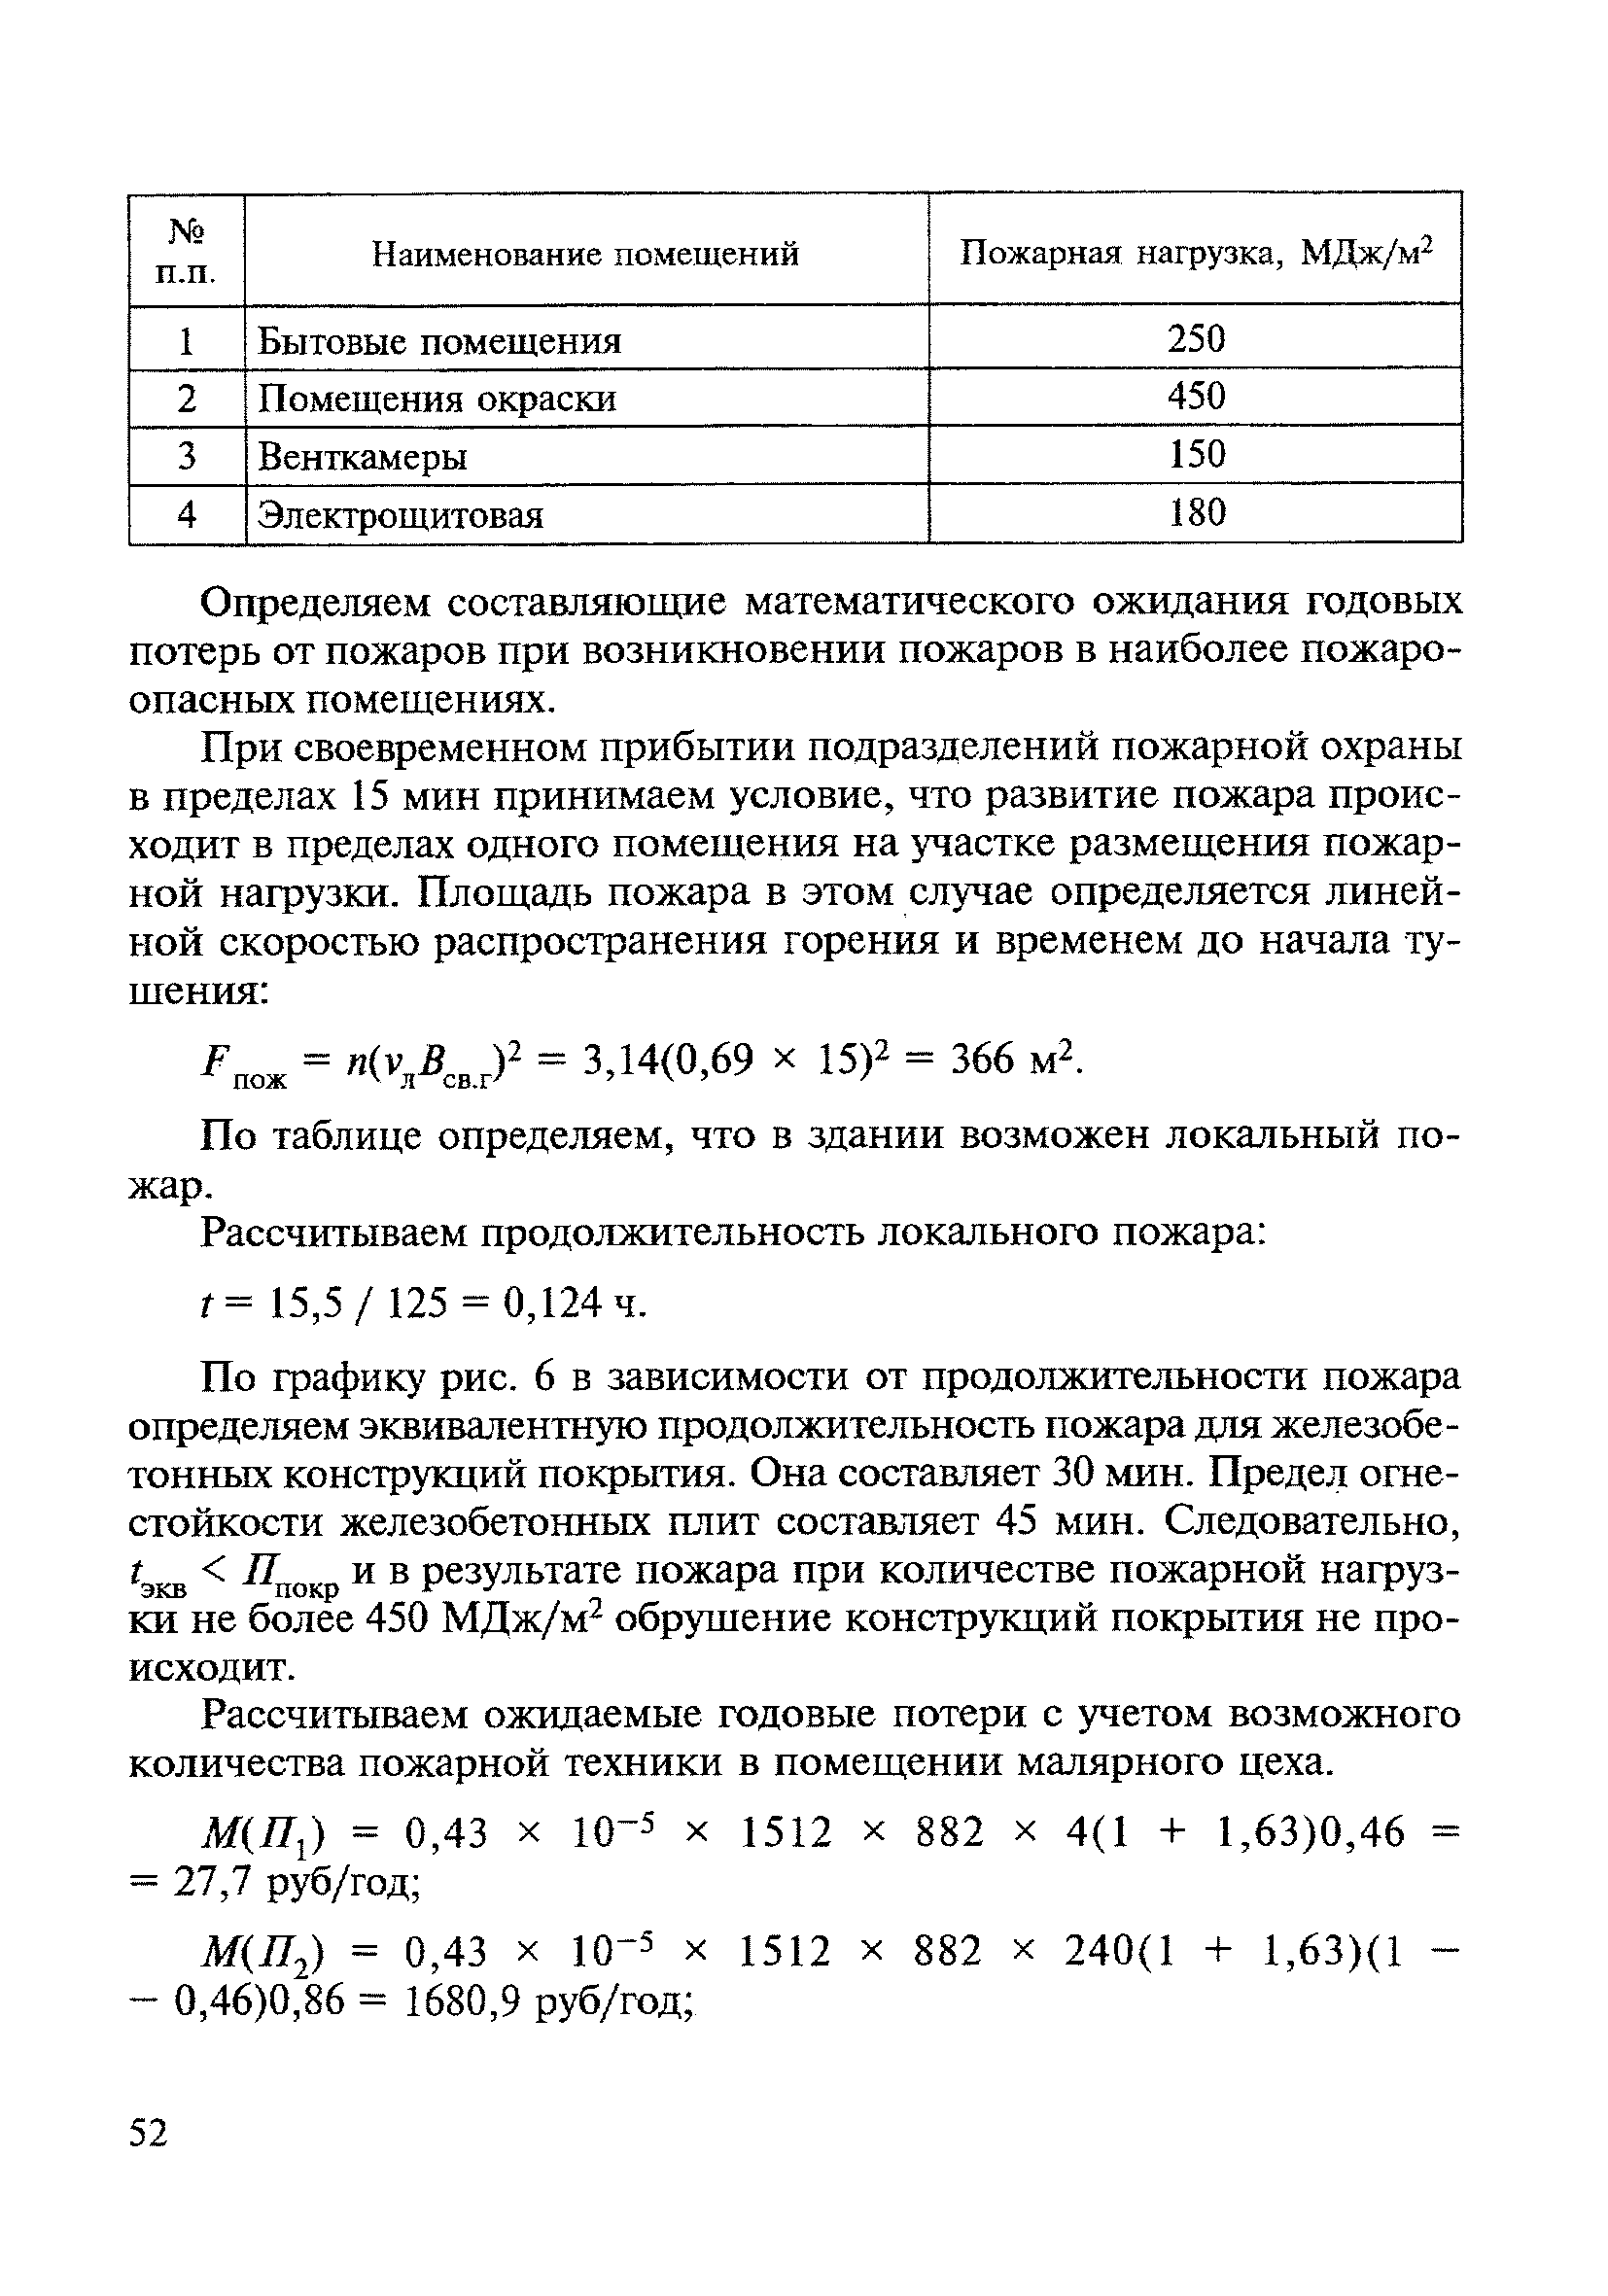 МДС 21-3.2001